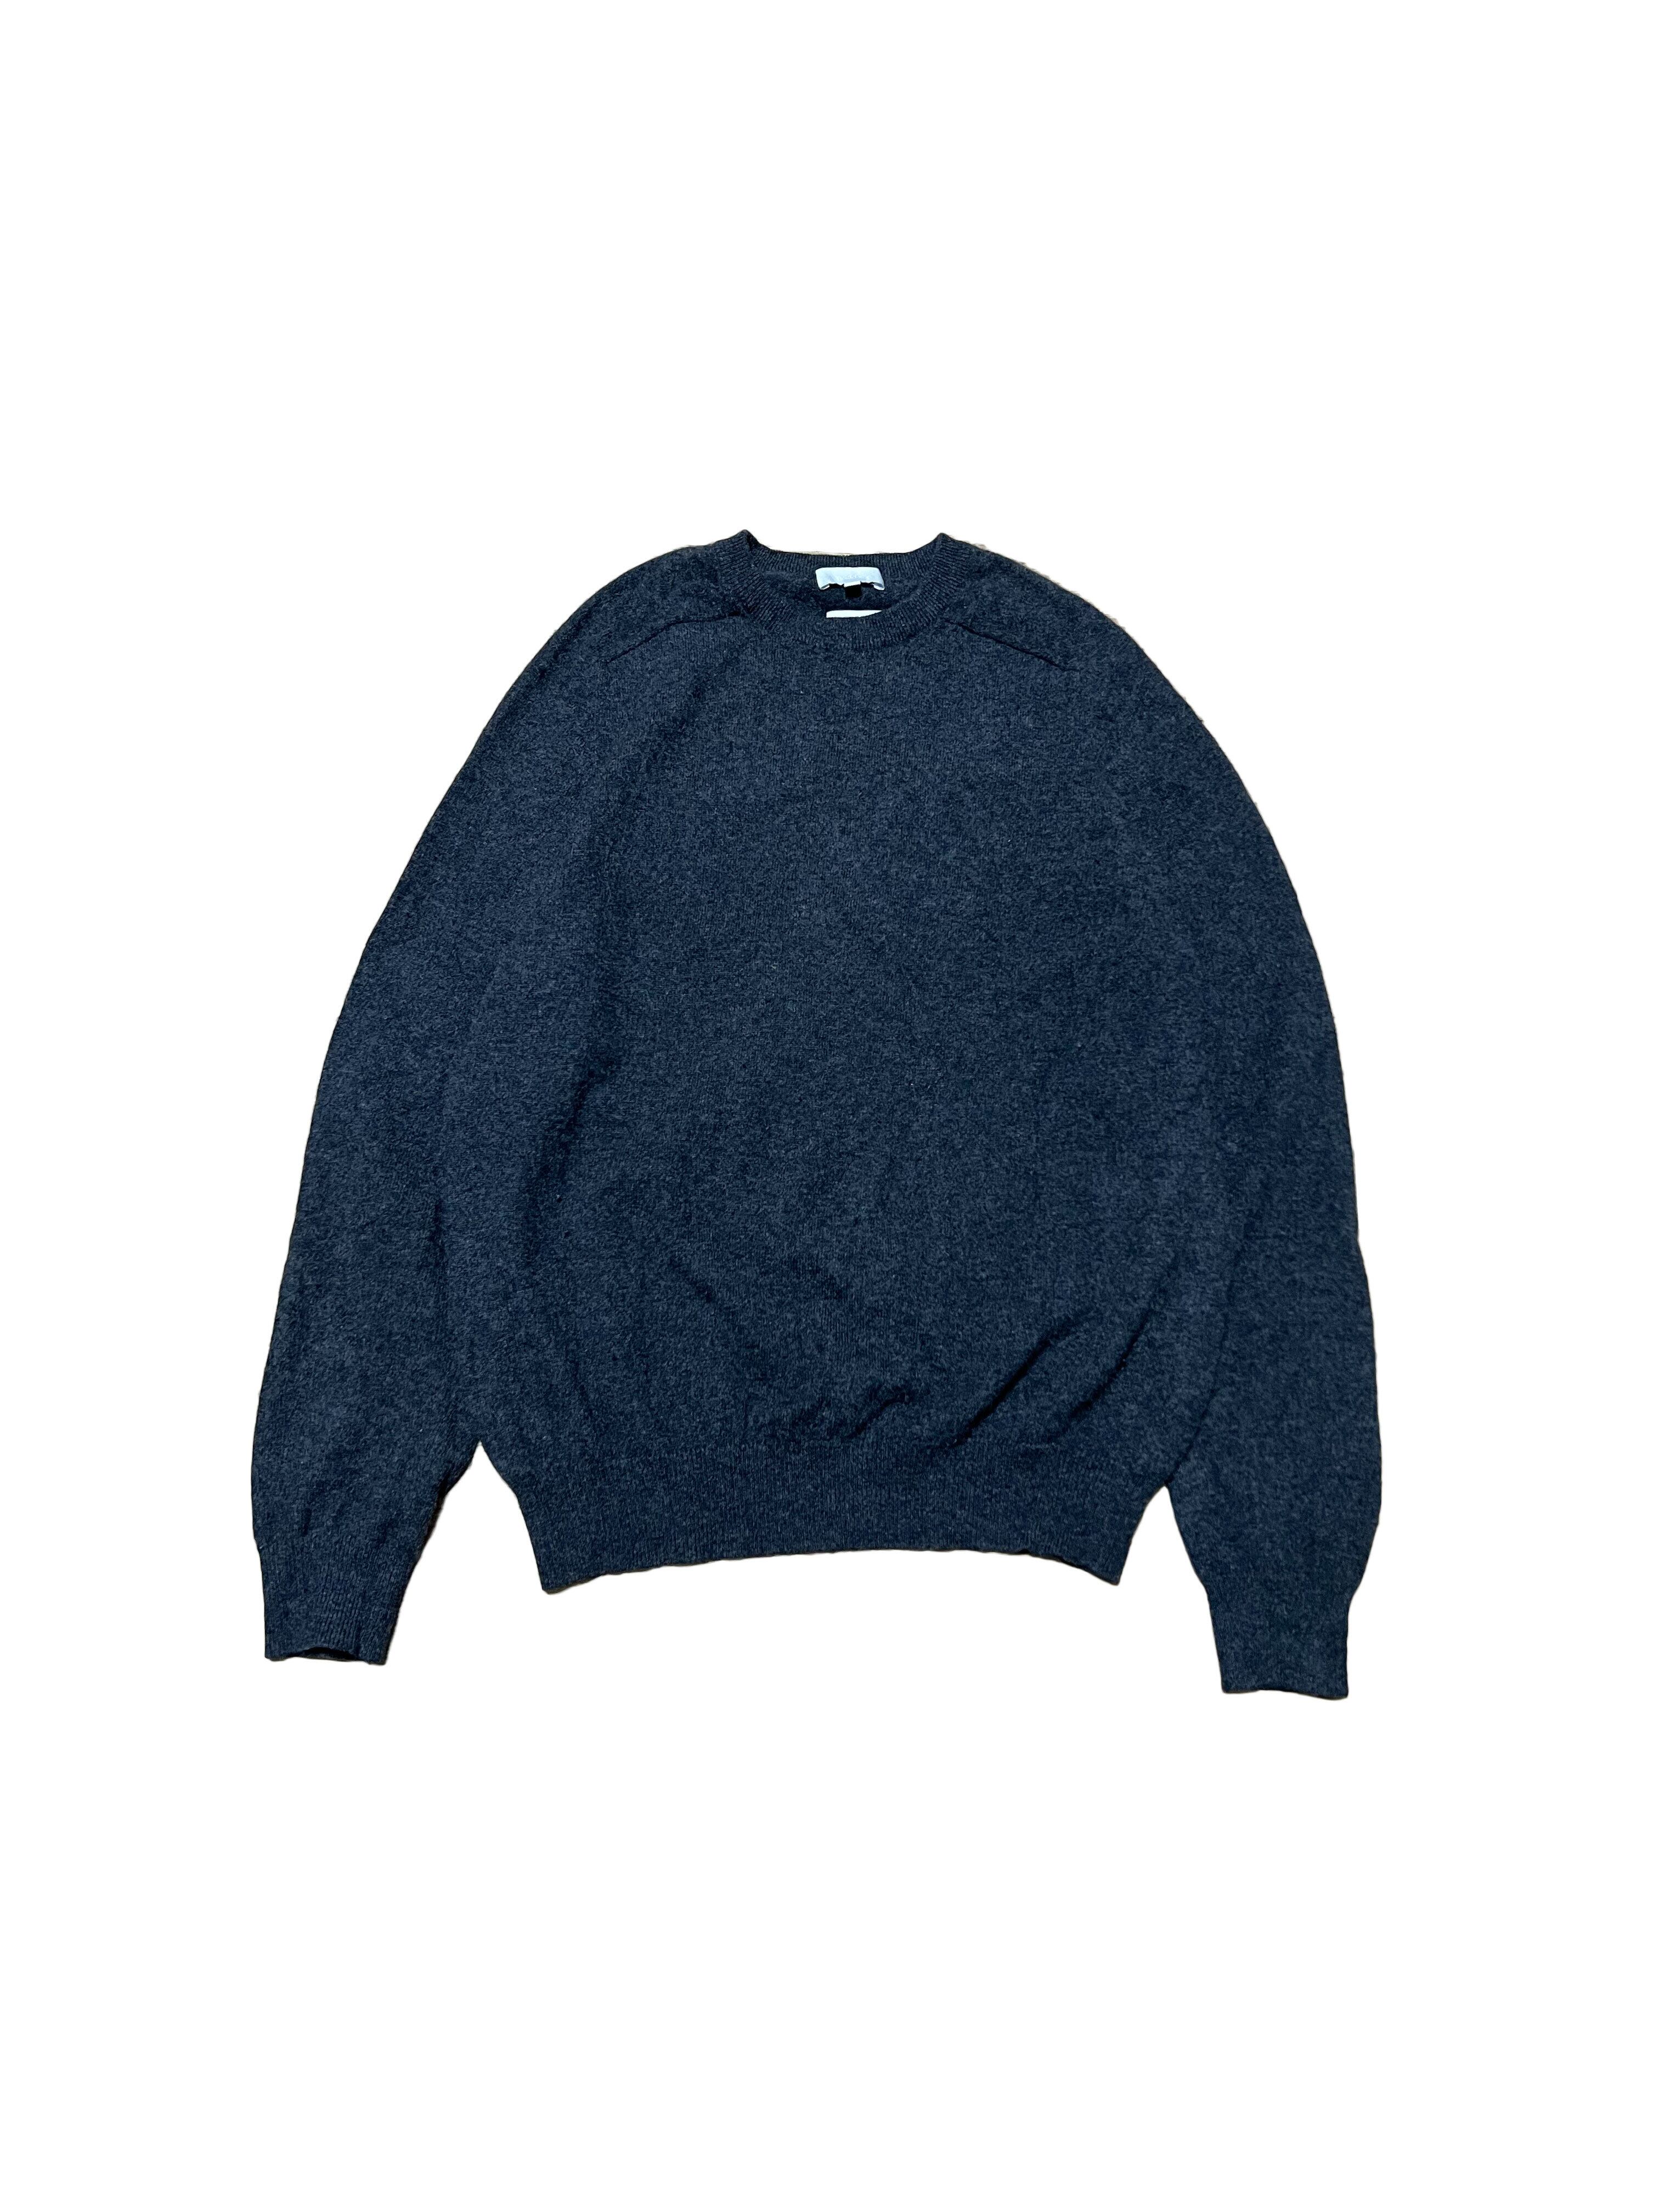 knit | DICE vintage shop